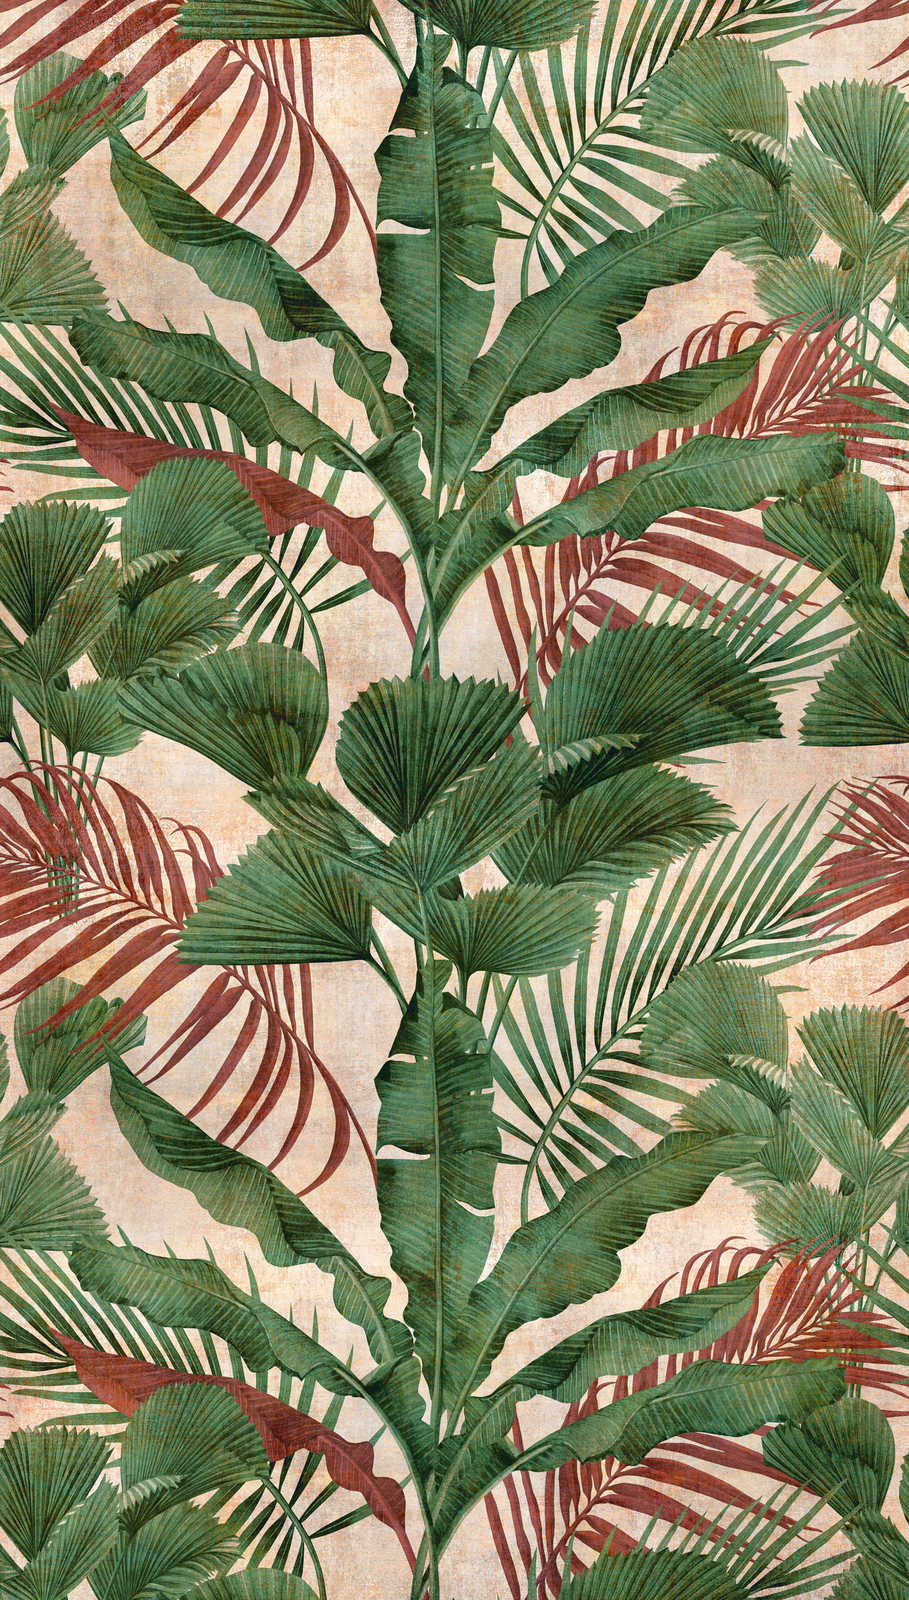             Dschungeltapete mit tropischen Pflanzen – Grün, Beige, Rot
        